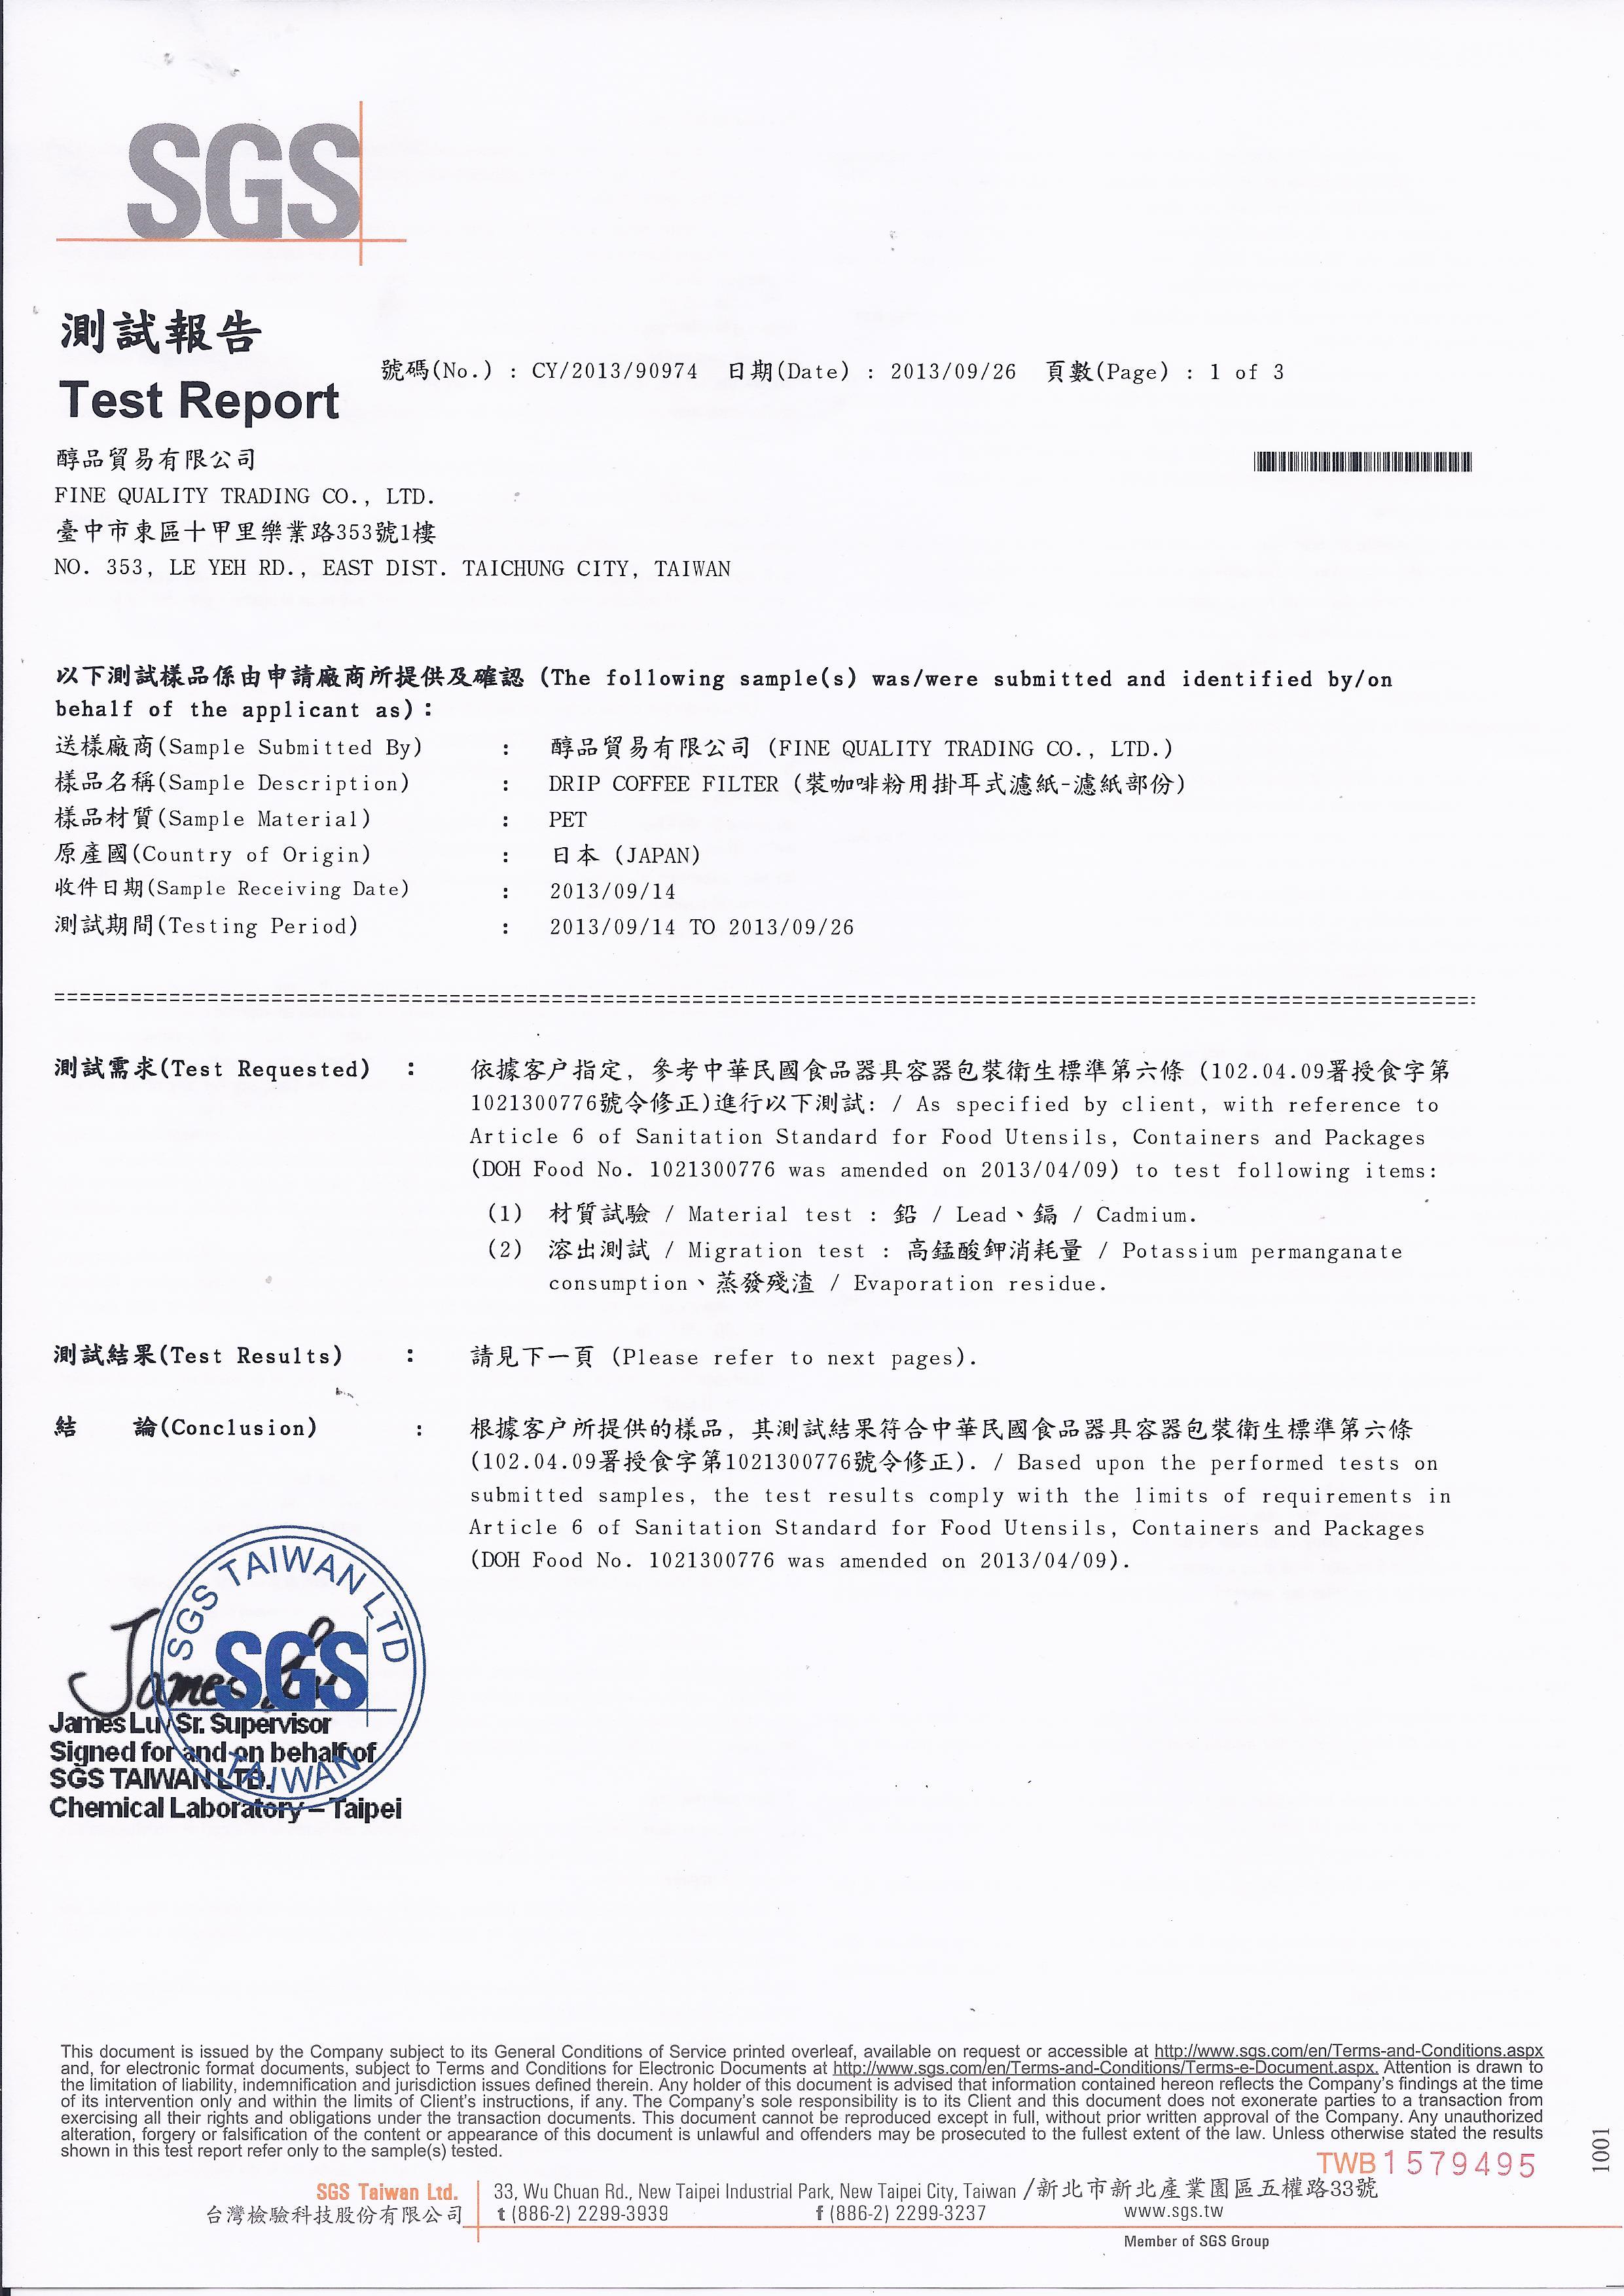 20130926-醇品-SGS測試報告-濾紙1 of 3